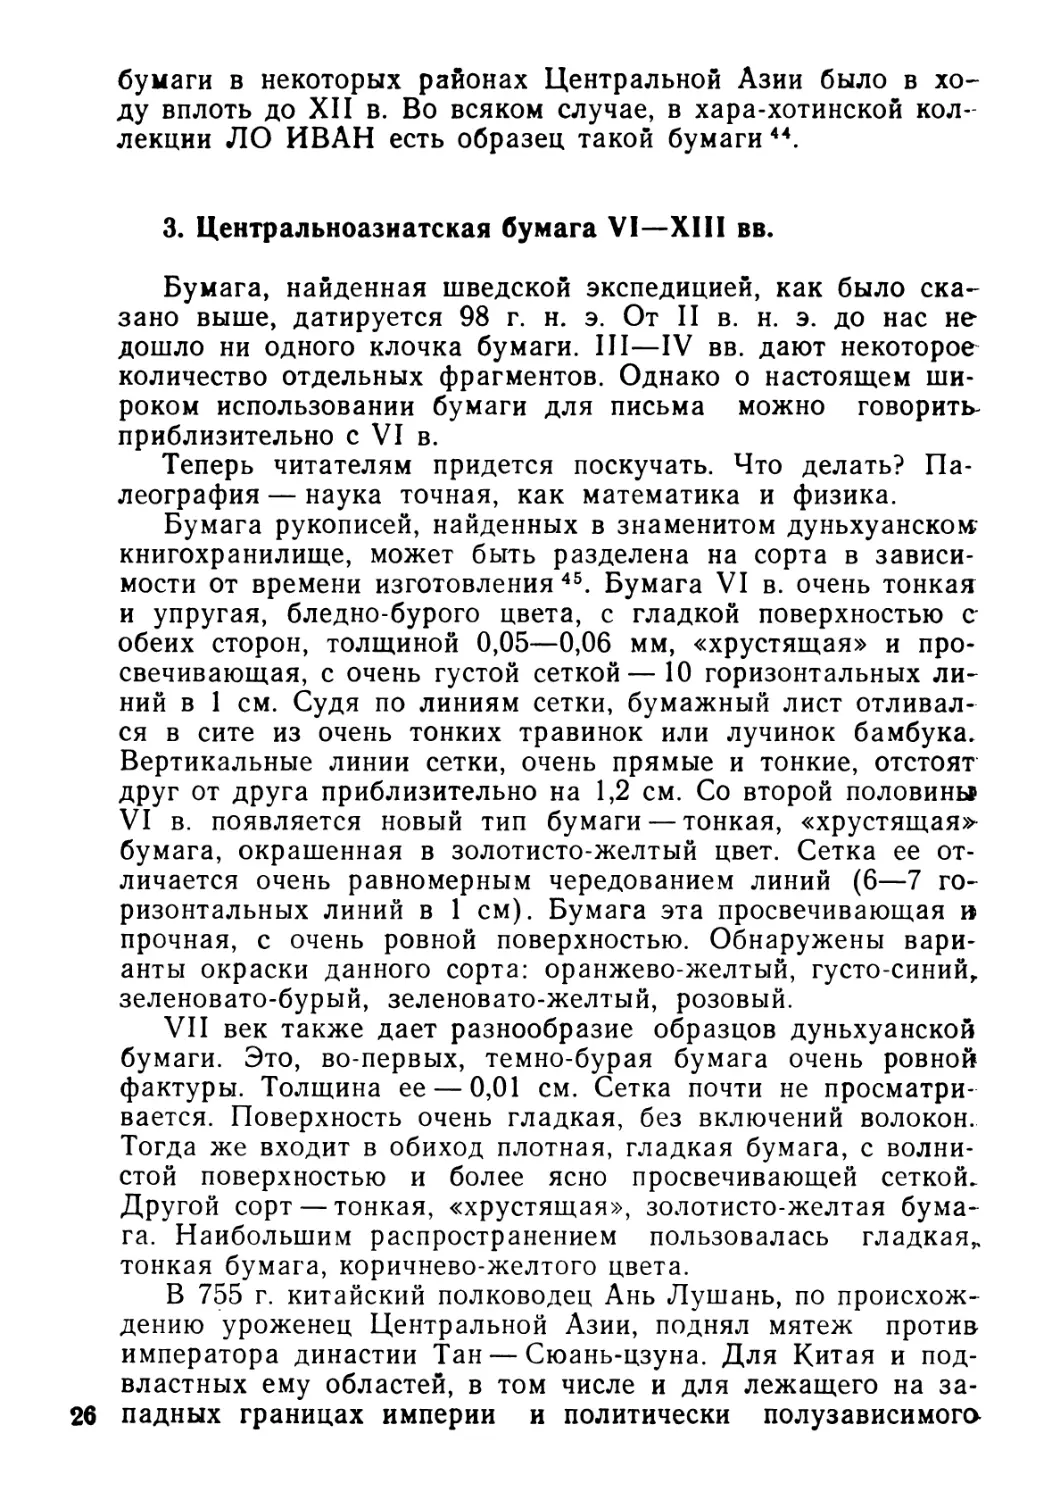 3. Центральноазиатская бумага VI—XIII вв.